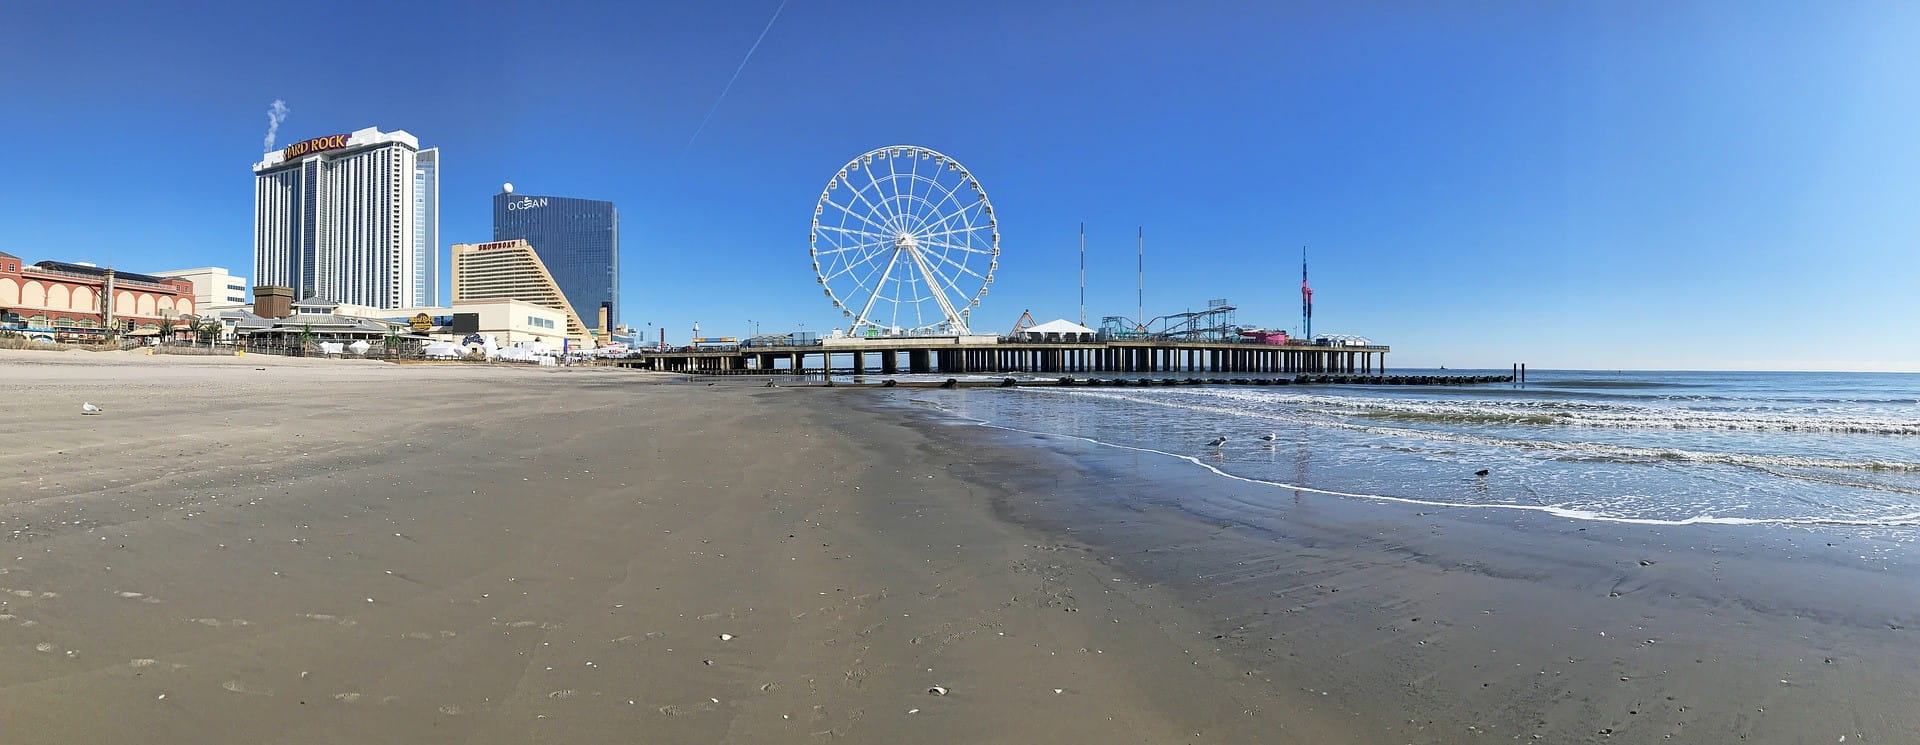 Der Strand von Atlantic City mit seiner typischen Casinoarchitektur und dem Riesenrad.